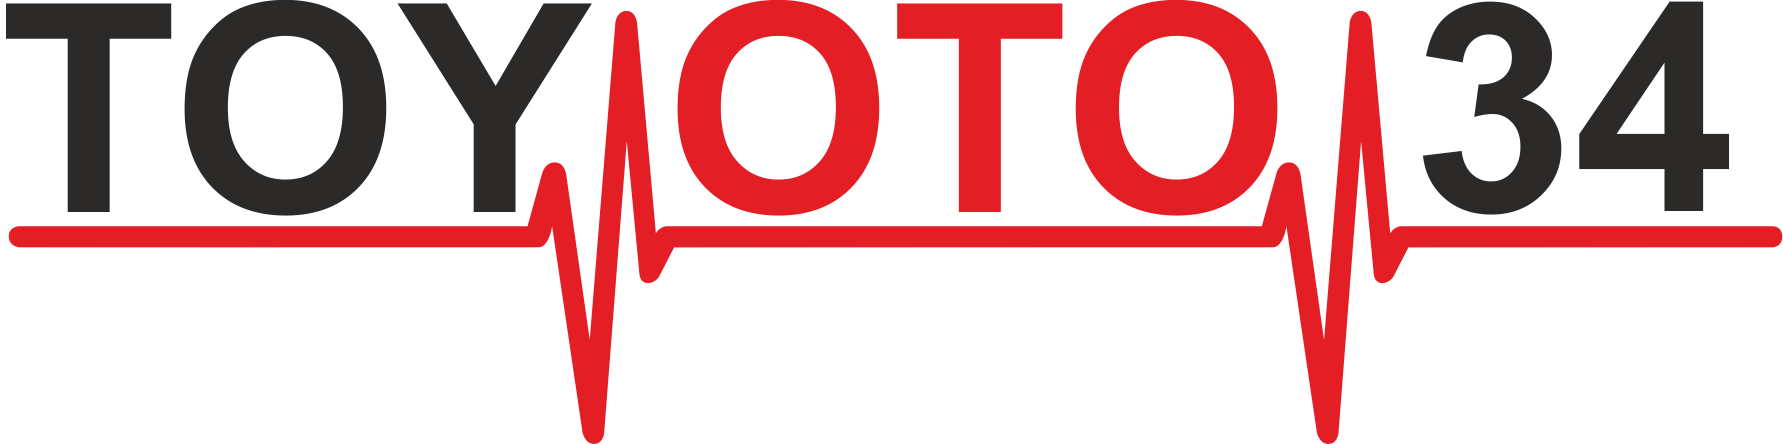 Toyoto 34